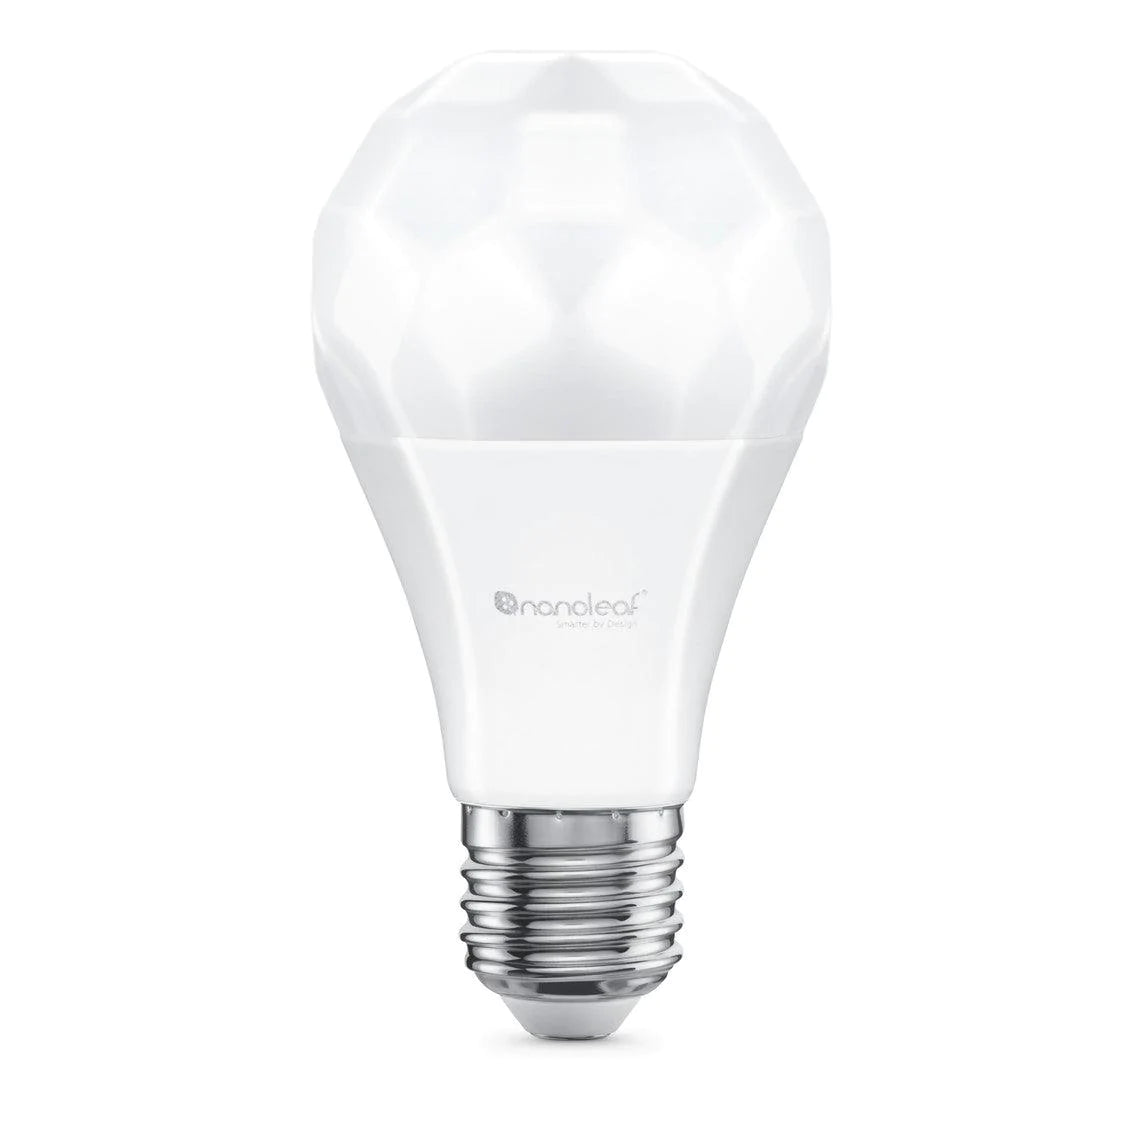 E27 Bulbs - Peter Murphy Lighting & Electrical Ltd